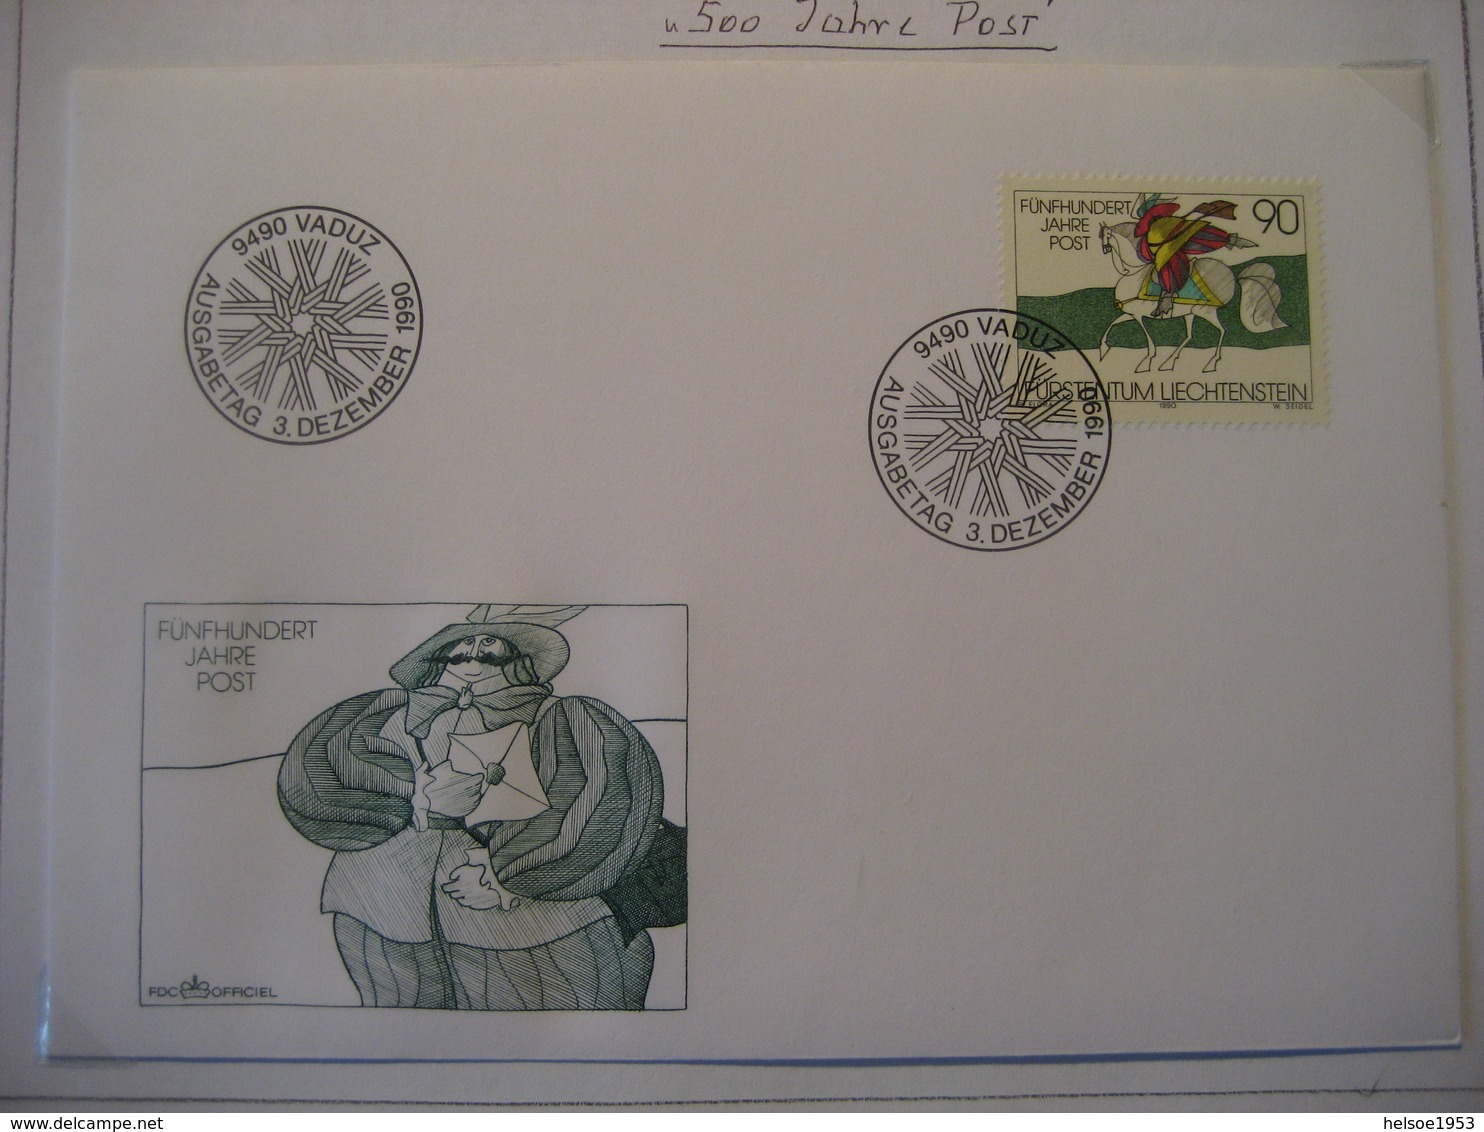 Liechtenstein- 2 FDC Belege 15Jahre Briefmarke Mi.Nr. 986, 500 Jahre Post Mi.Nr. 1004 - Covers & Documents